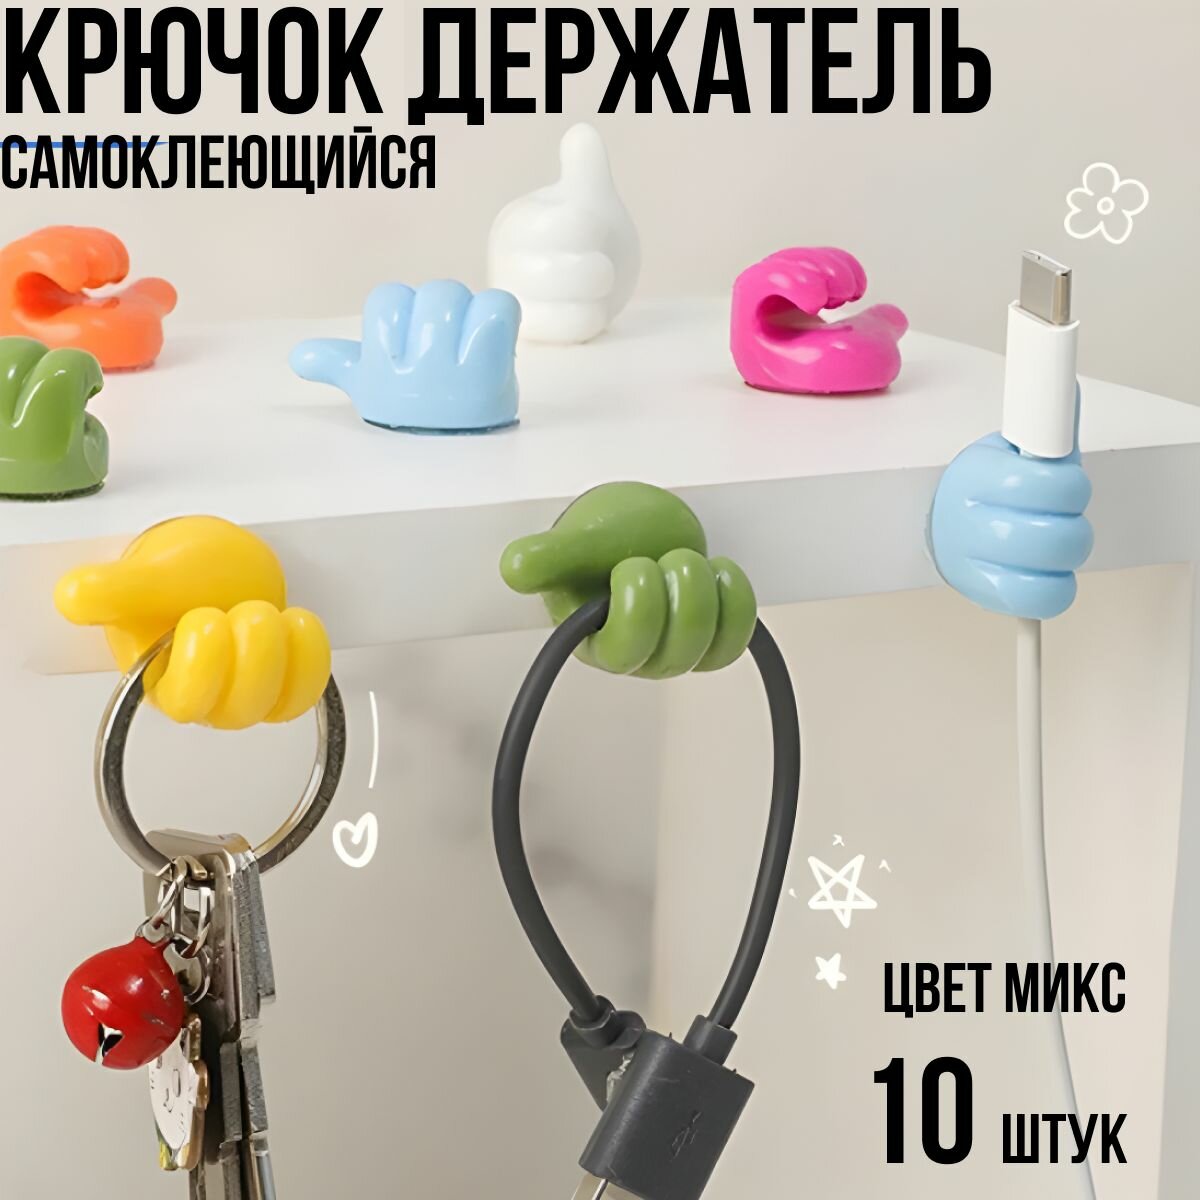 Крючок декоративный самоклеющийся для ванной и кухни / держатель для полотенец зубных щеток комнатных цветов; проводов наушников очков - набор 10 штук разного цвета